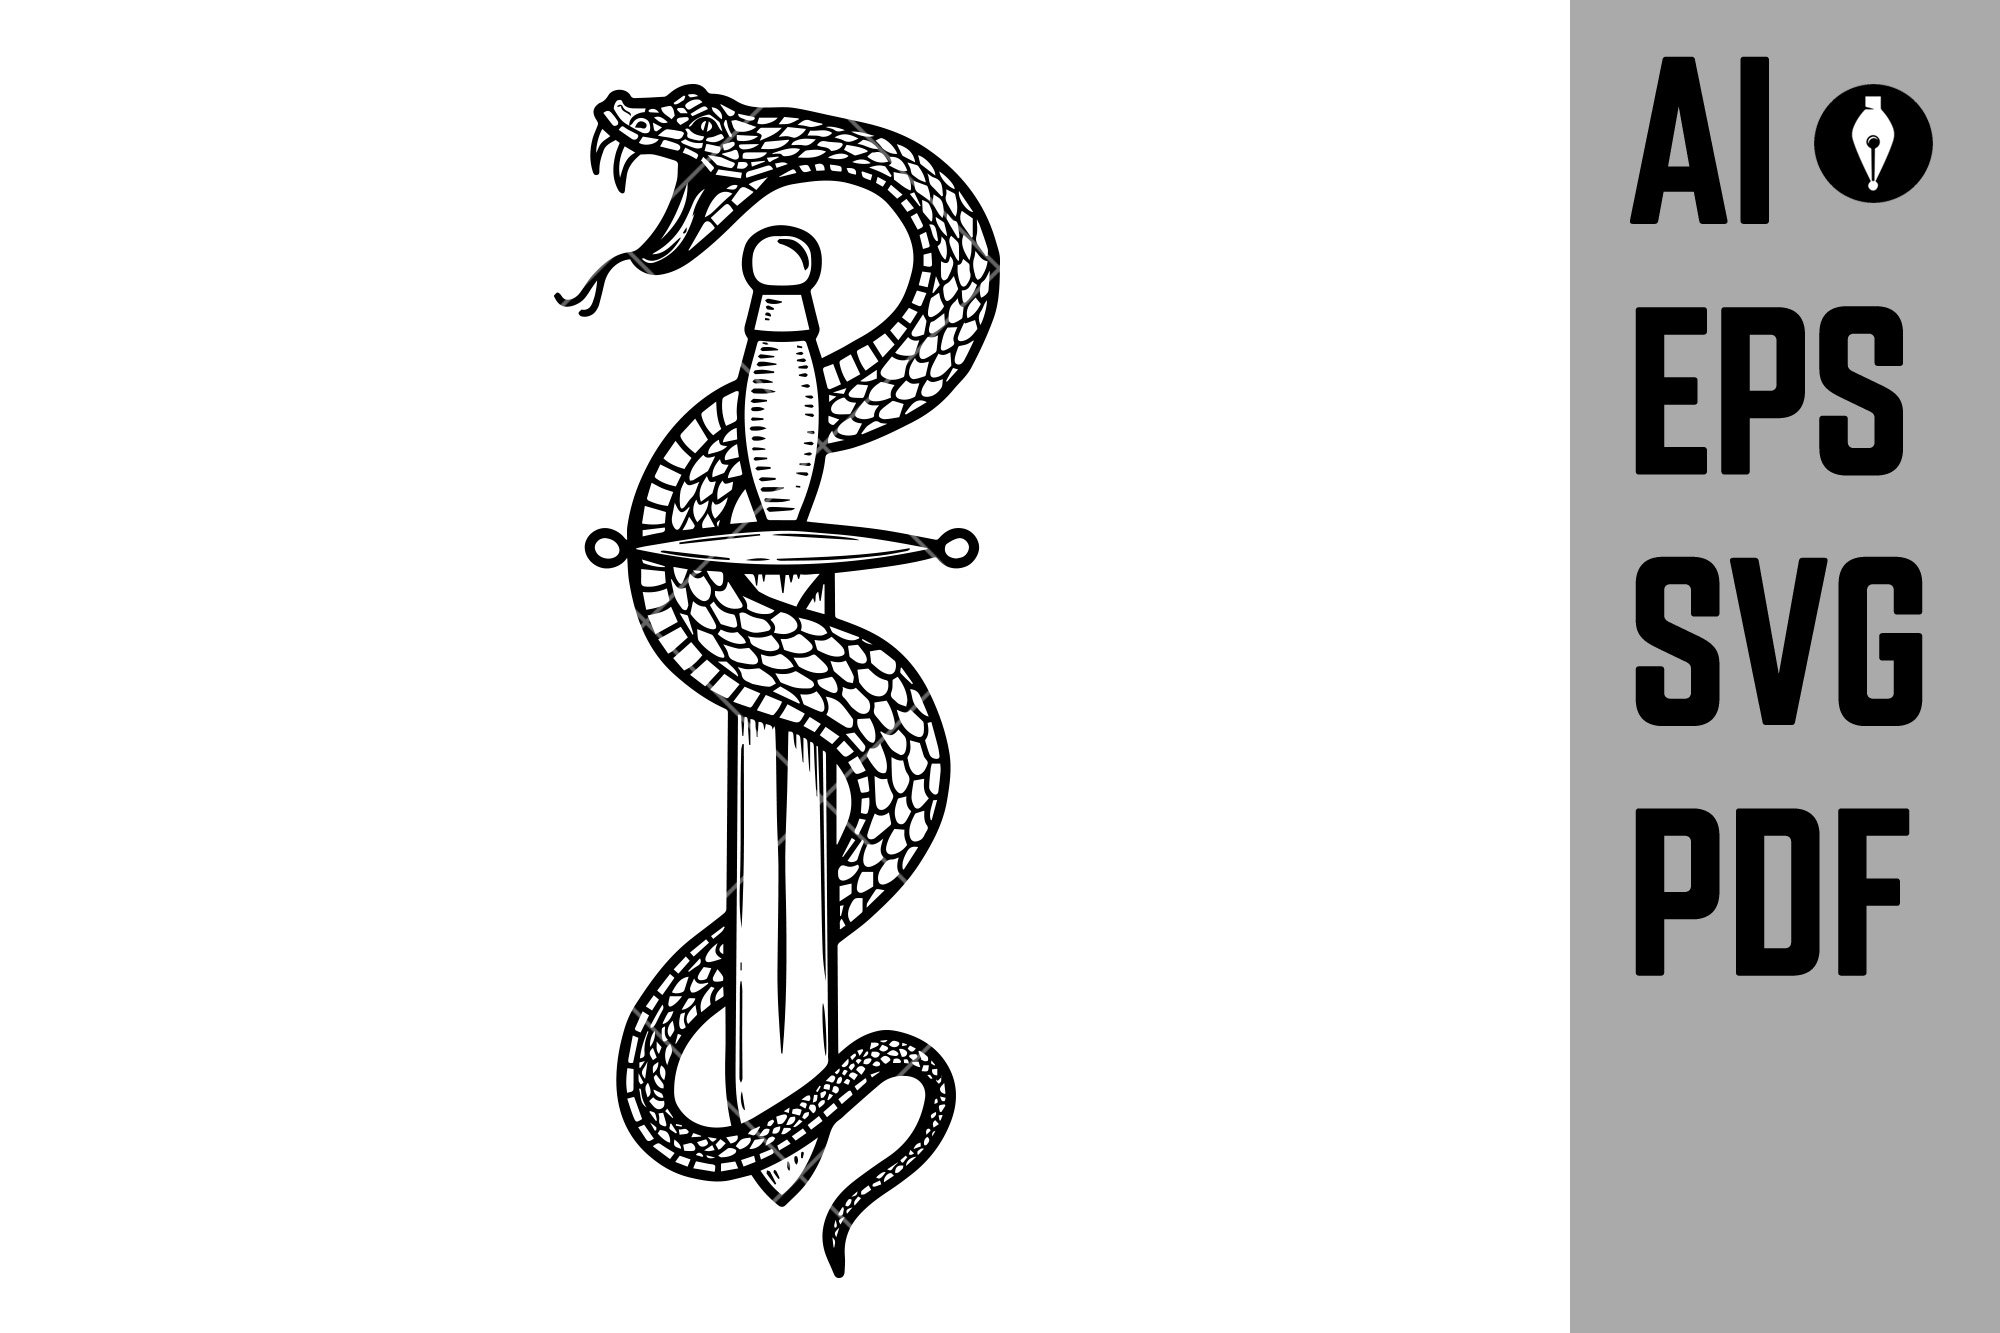 Vintage design with snake on dagger. cover image.